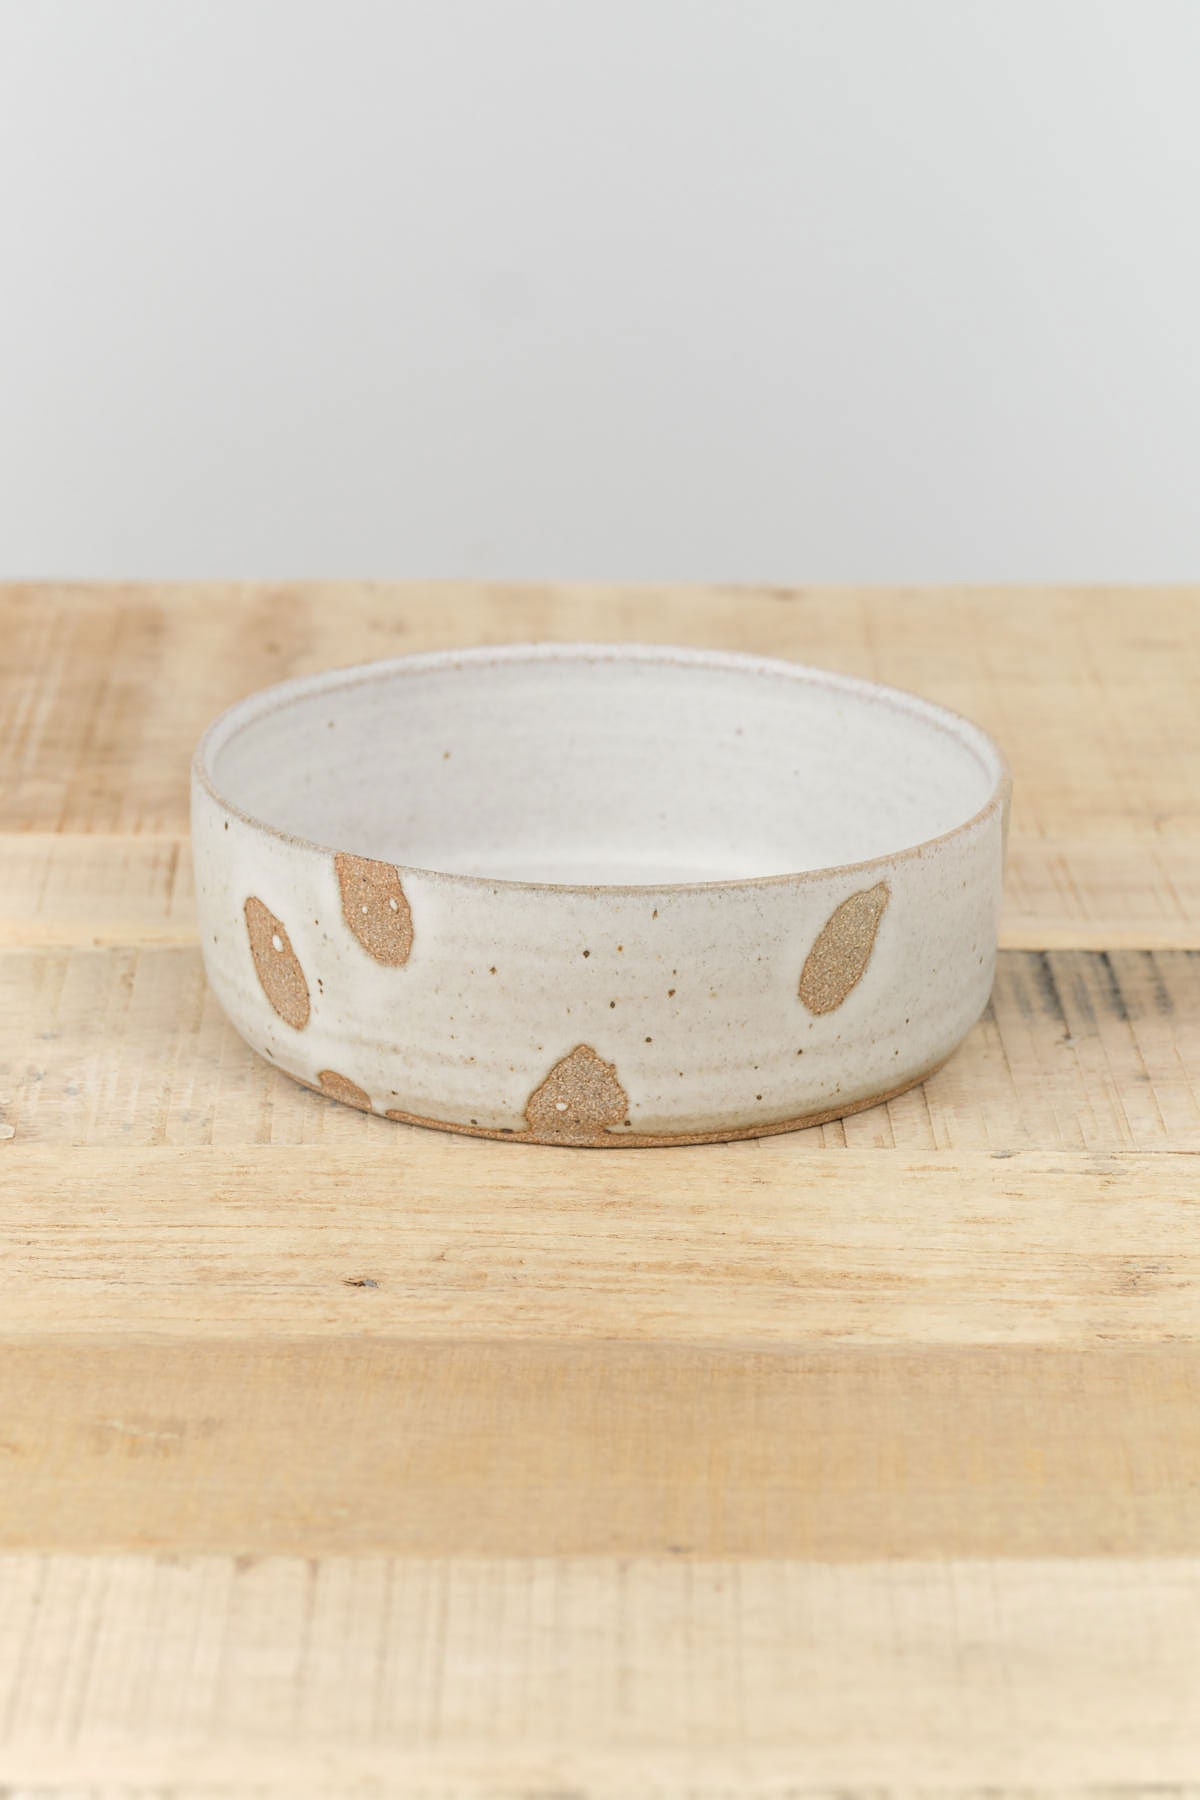 Petal Bowl by Tomoro Pottery